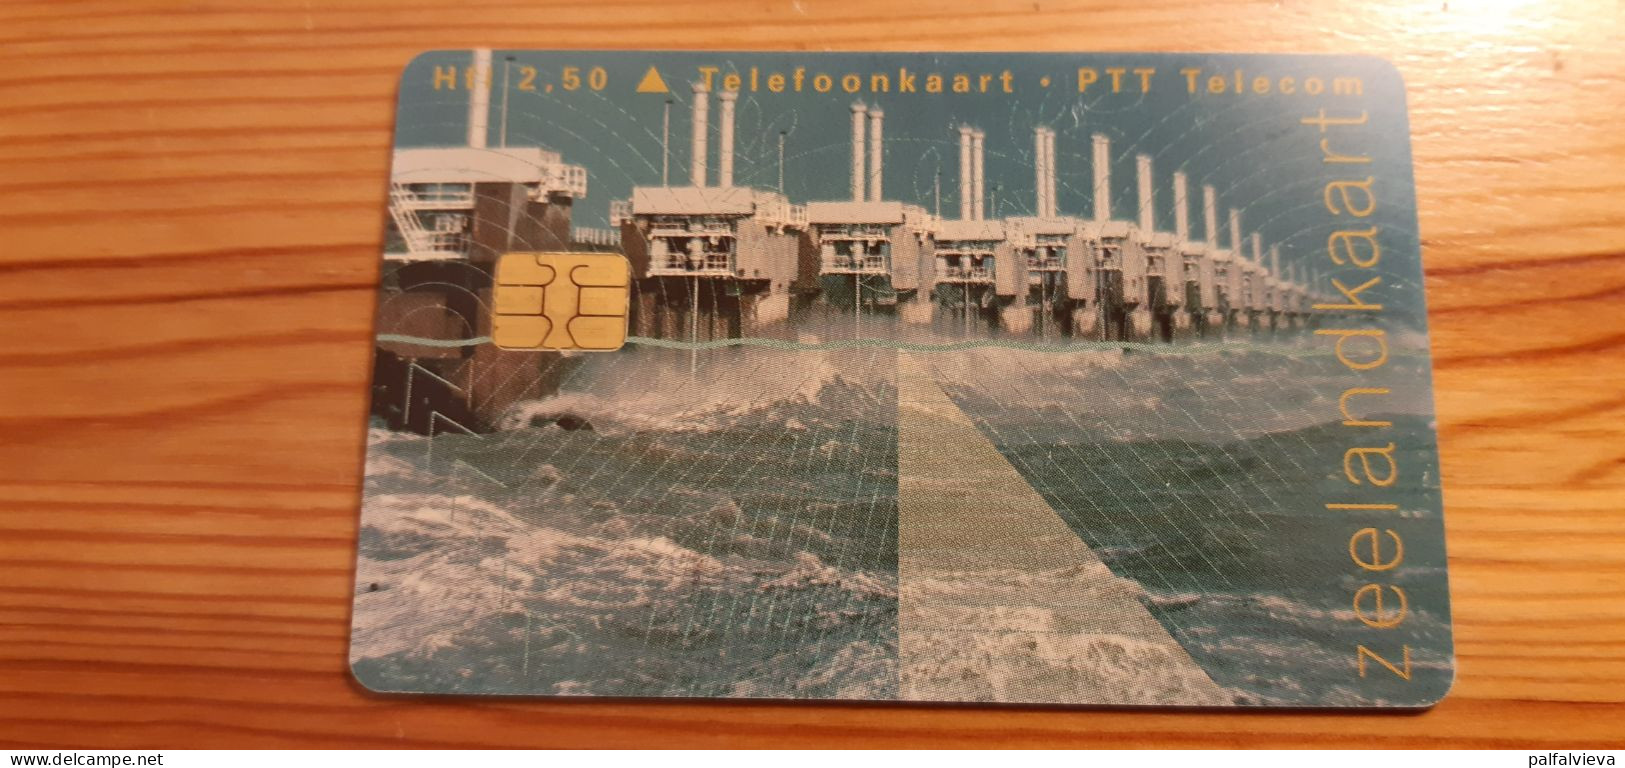 Phonecard Netherlands - Zeelandkaart - Public